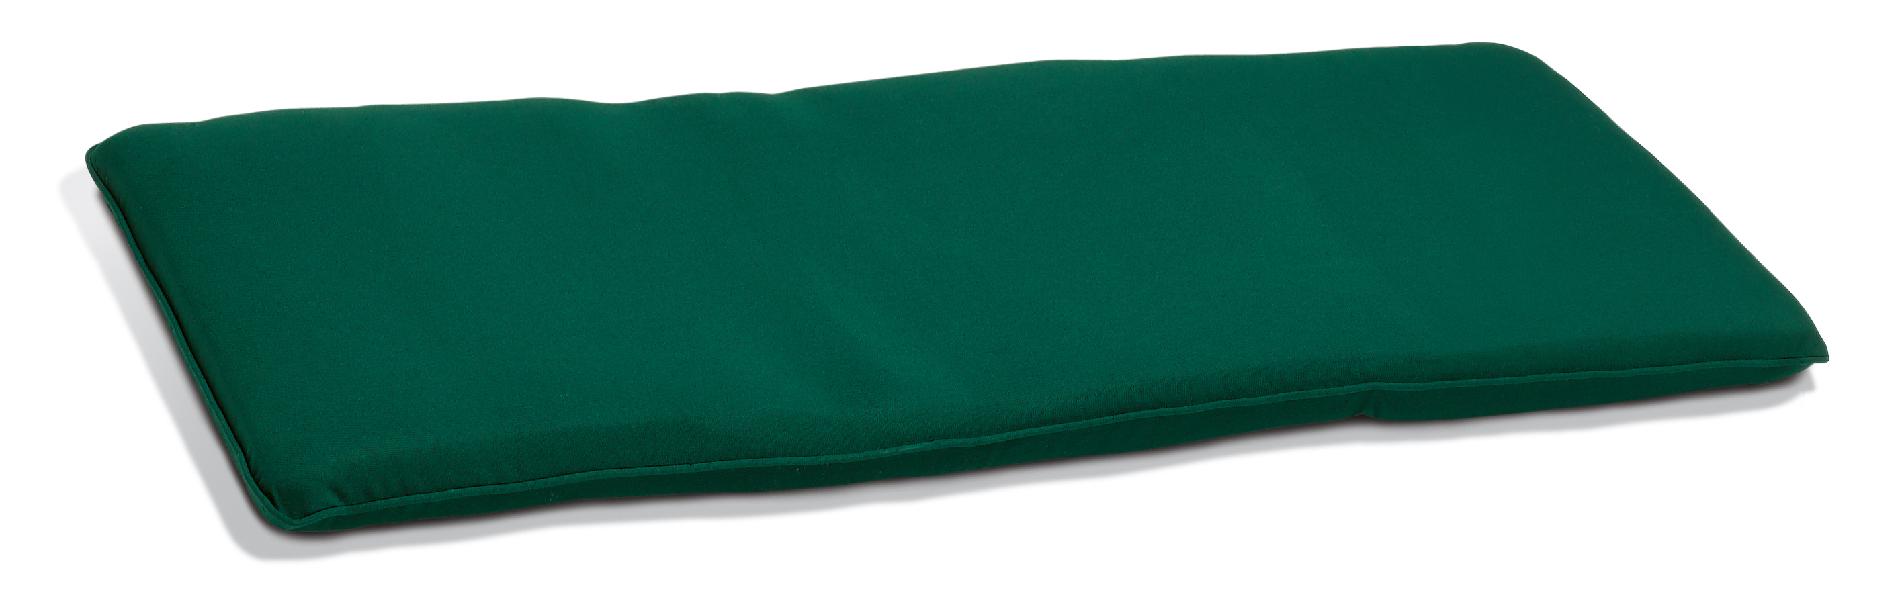 4' Backless Bench Cushion  Sunbrella&reg; Fabric  Hunter